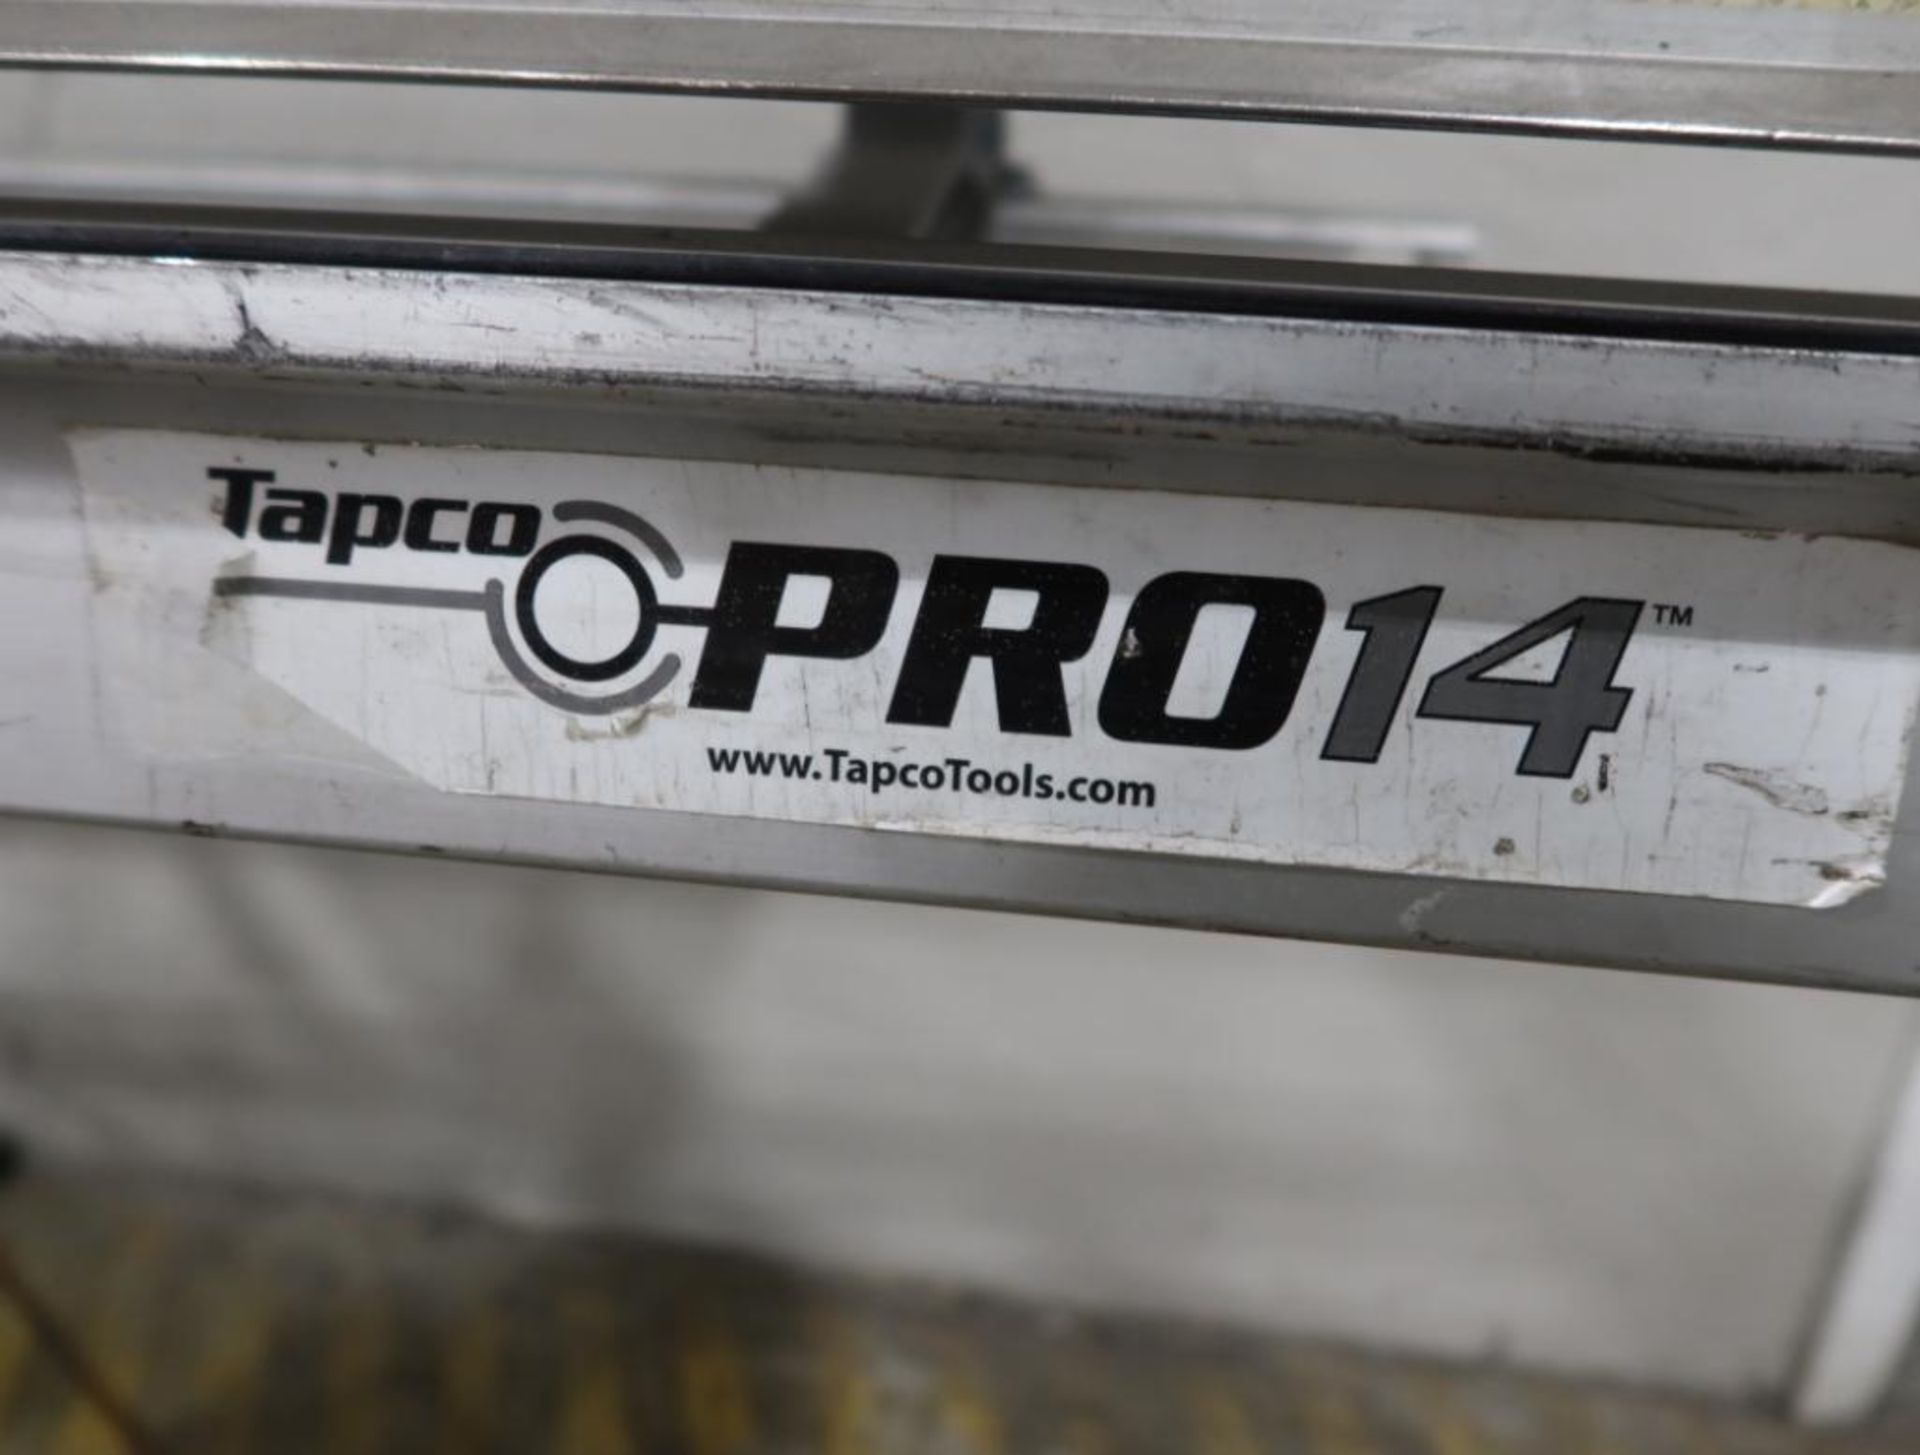 Tapco Pro14 Portable Manual Brake - Image 2 of 2